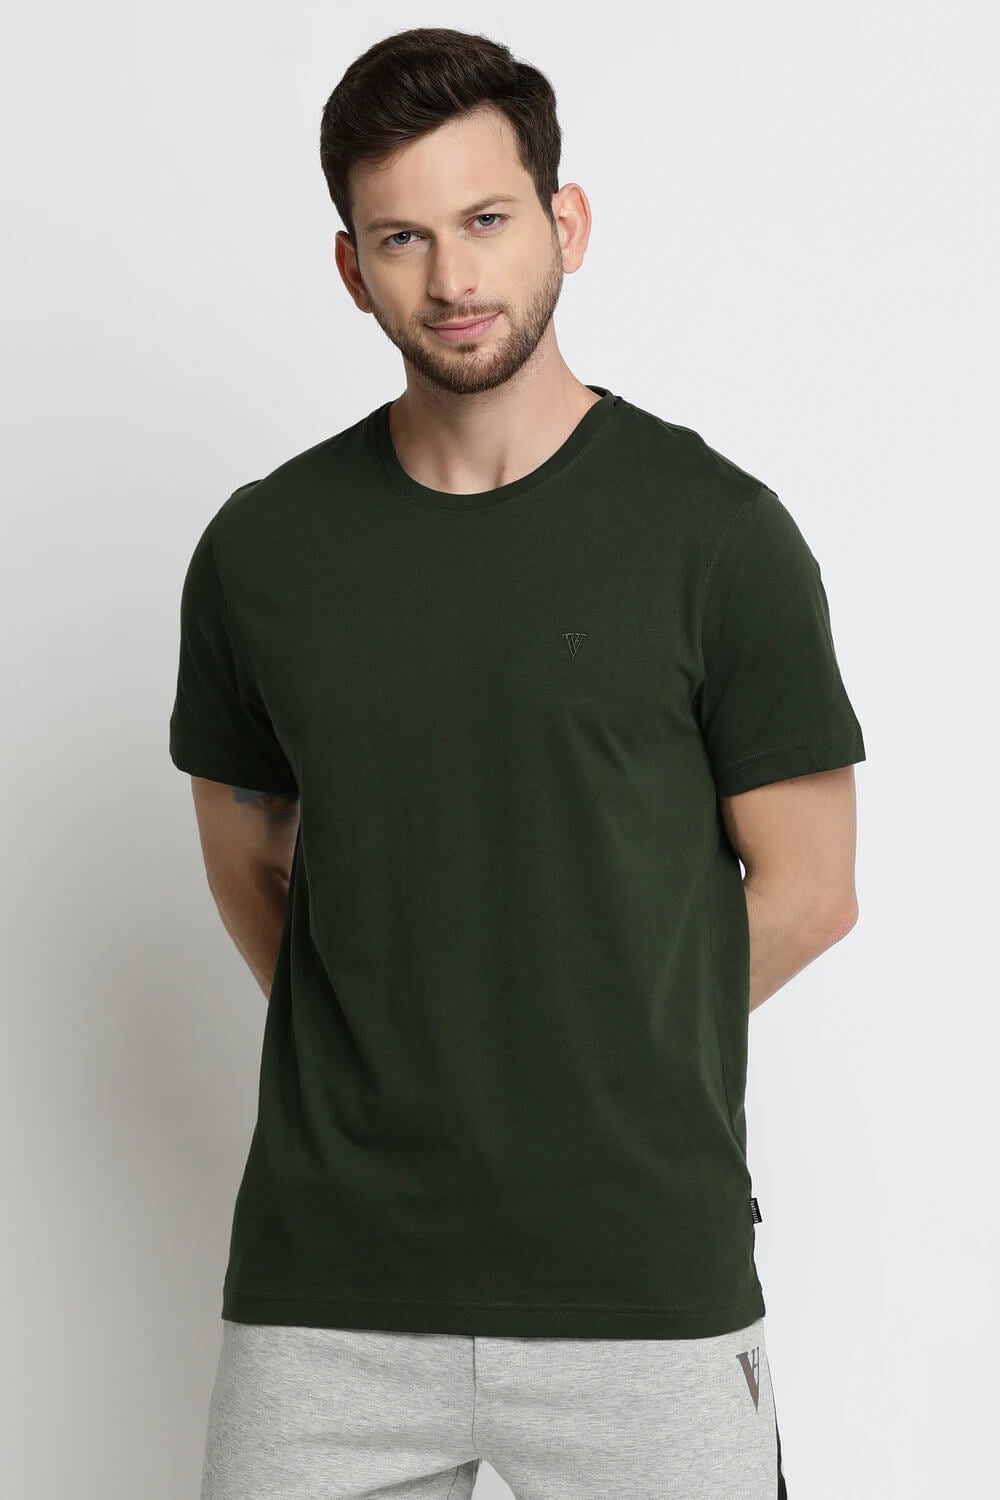 Van Heusen Green Tshirt for Men #60021